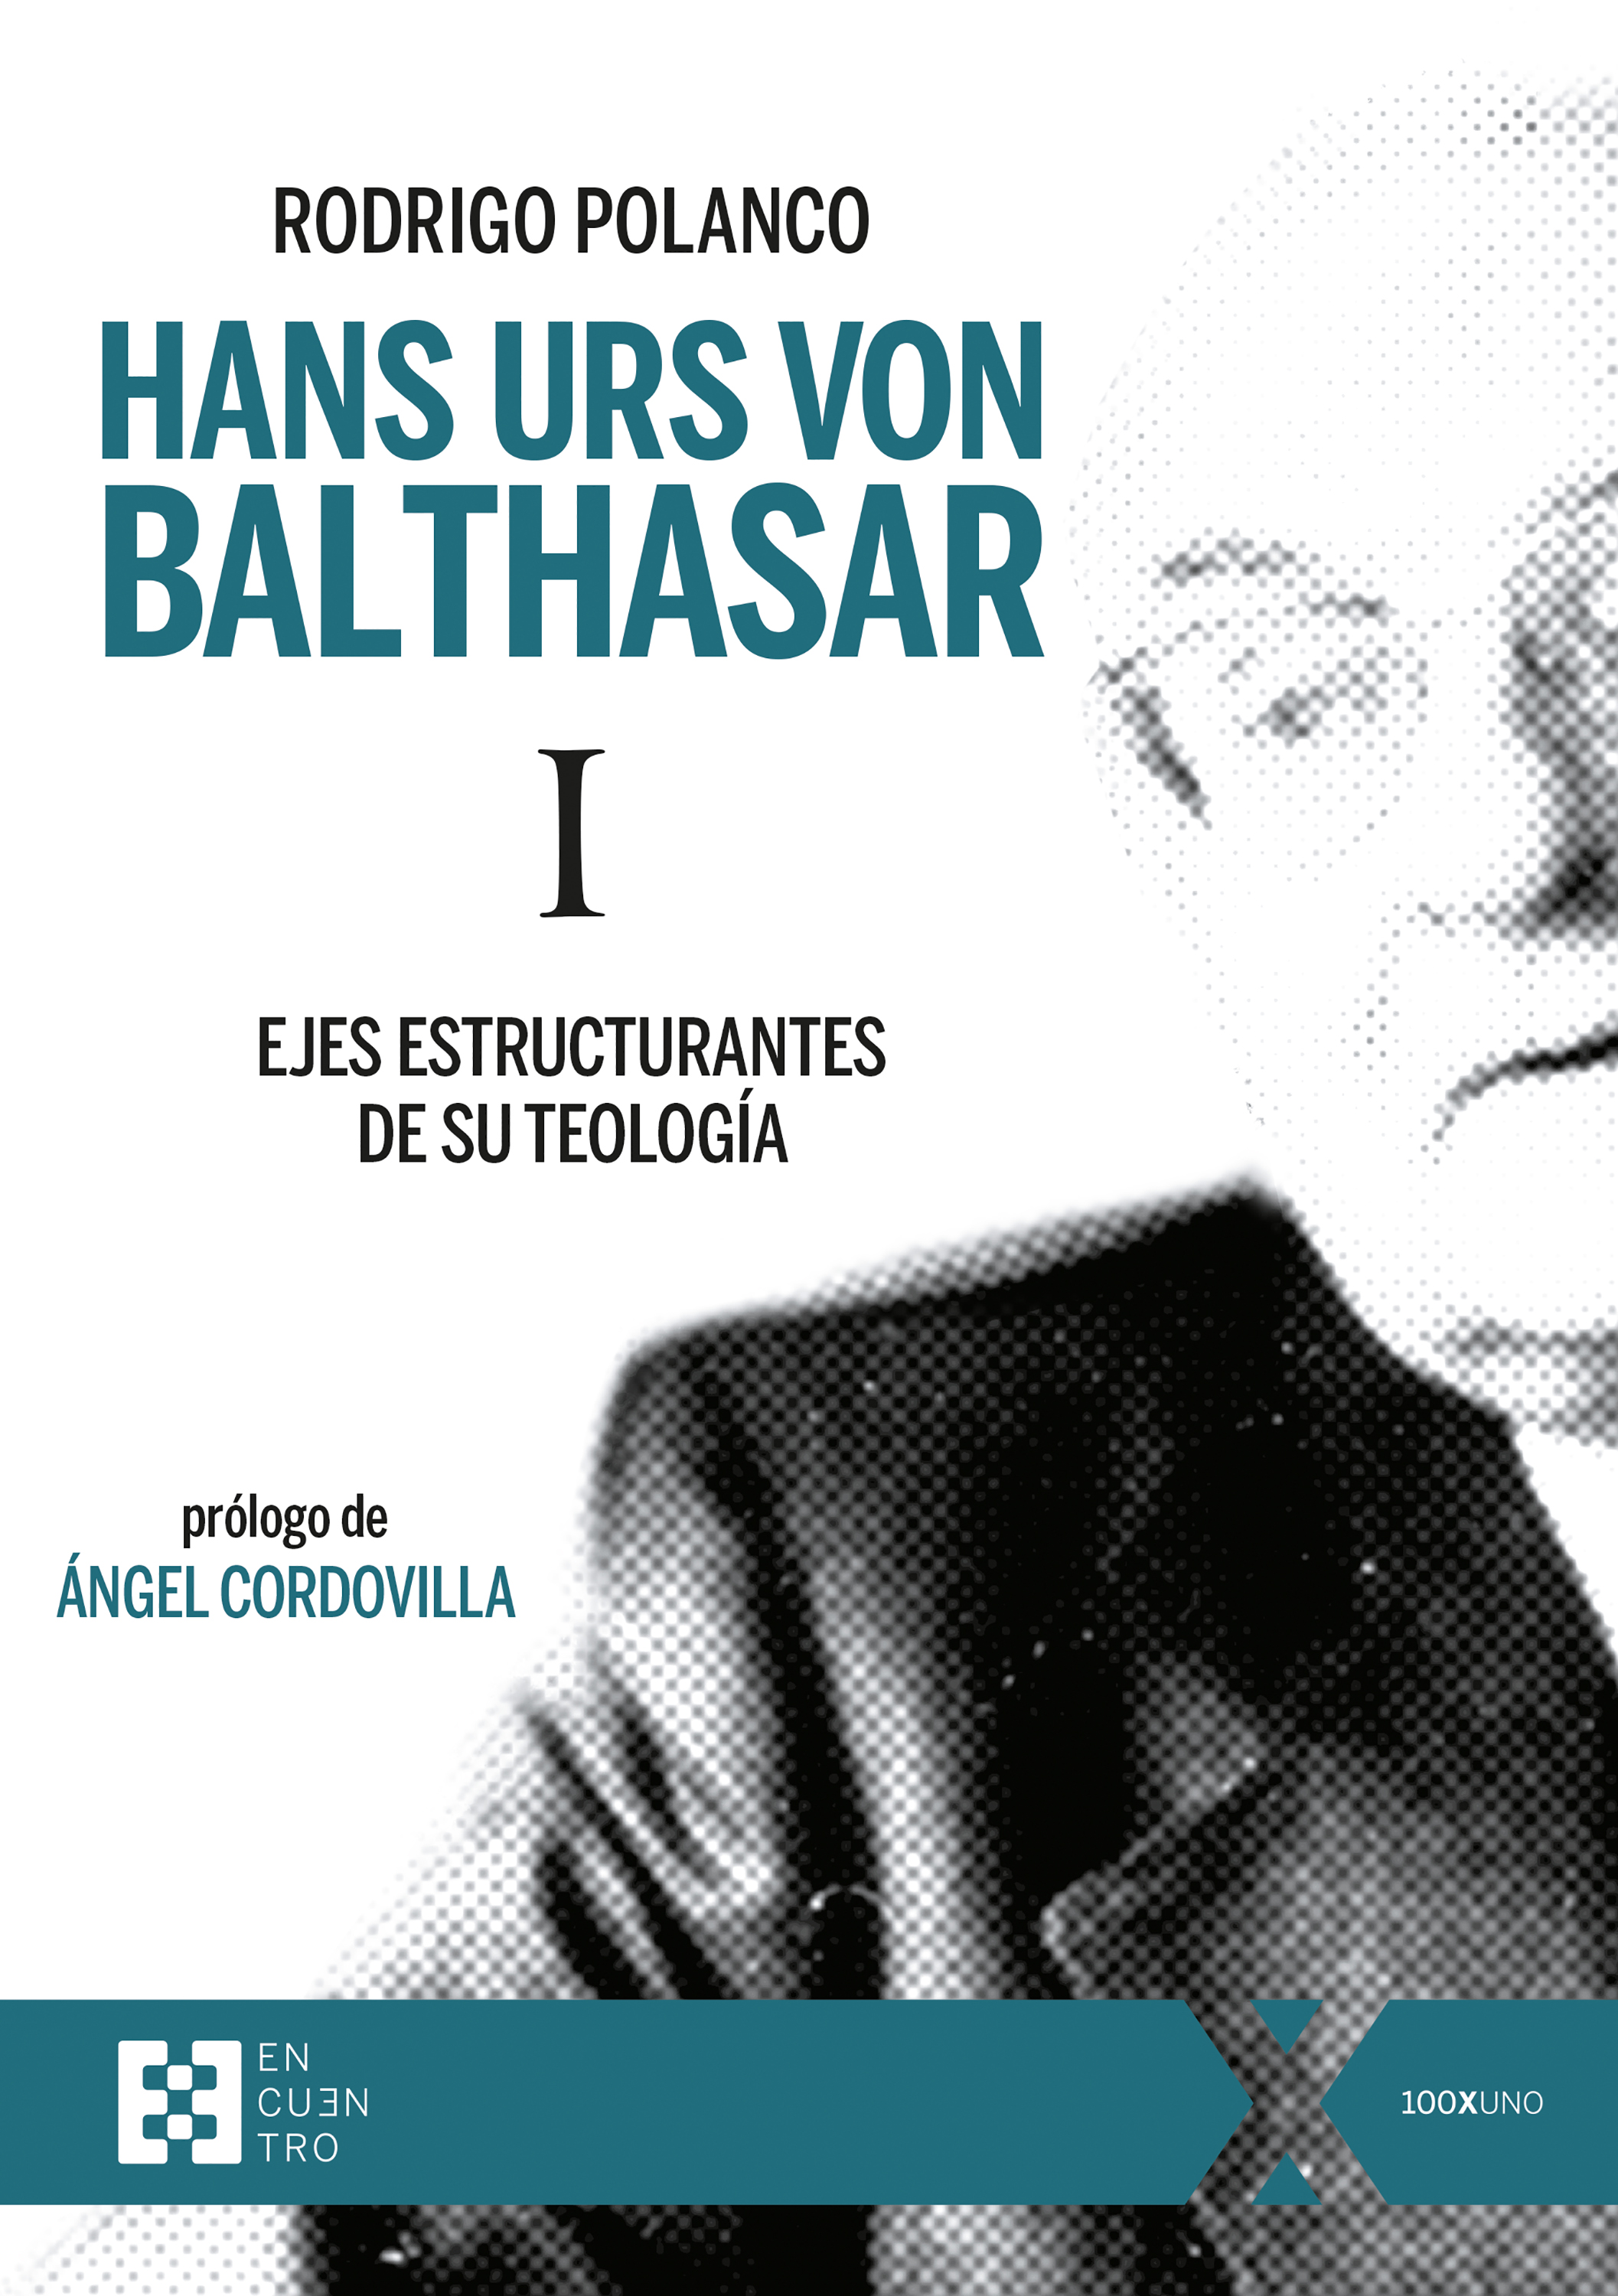 Imagen de portada del libro Hans Urs von Balthasar I